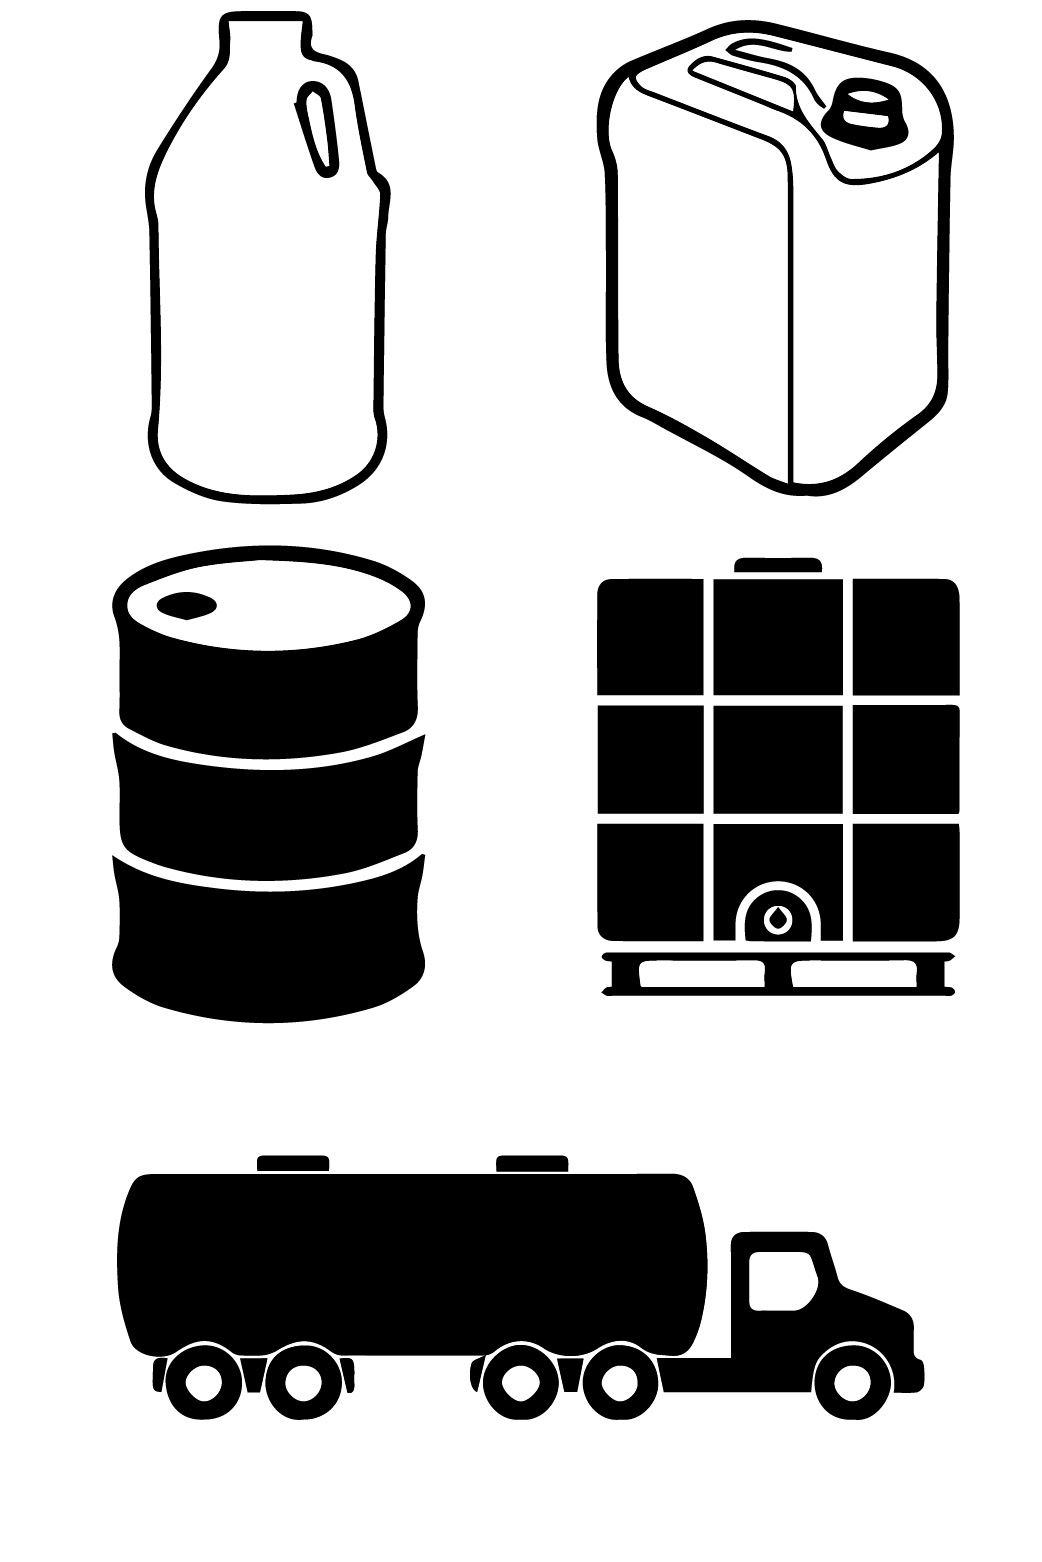 Buy Propylene Glycol: 1 gallon, 5 gallon carboy, drum, tote, bulk tanker